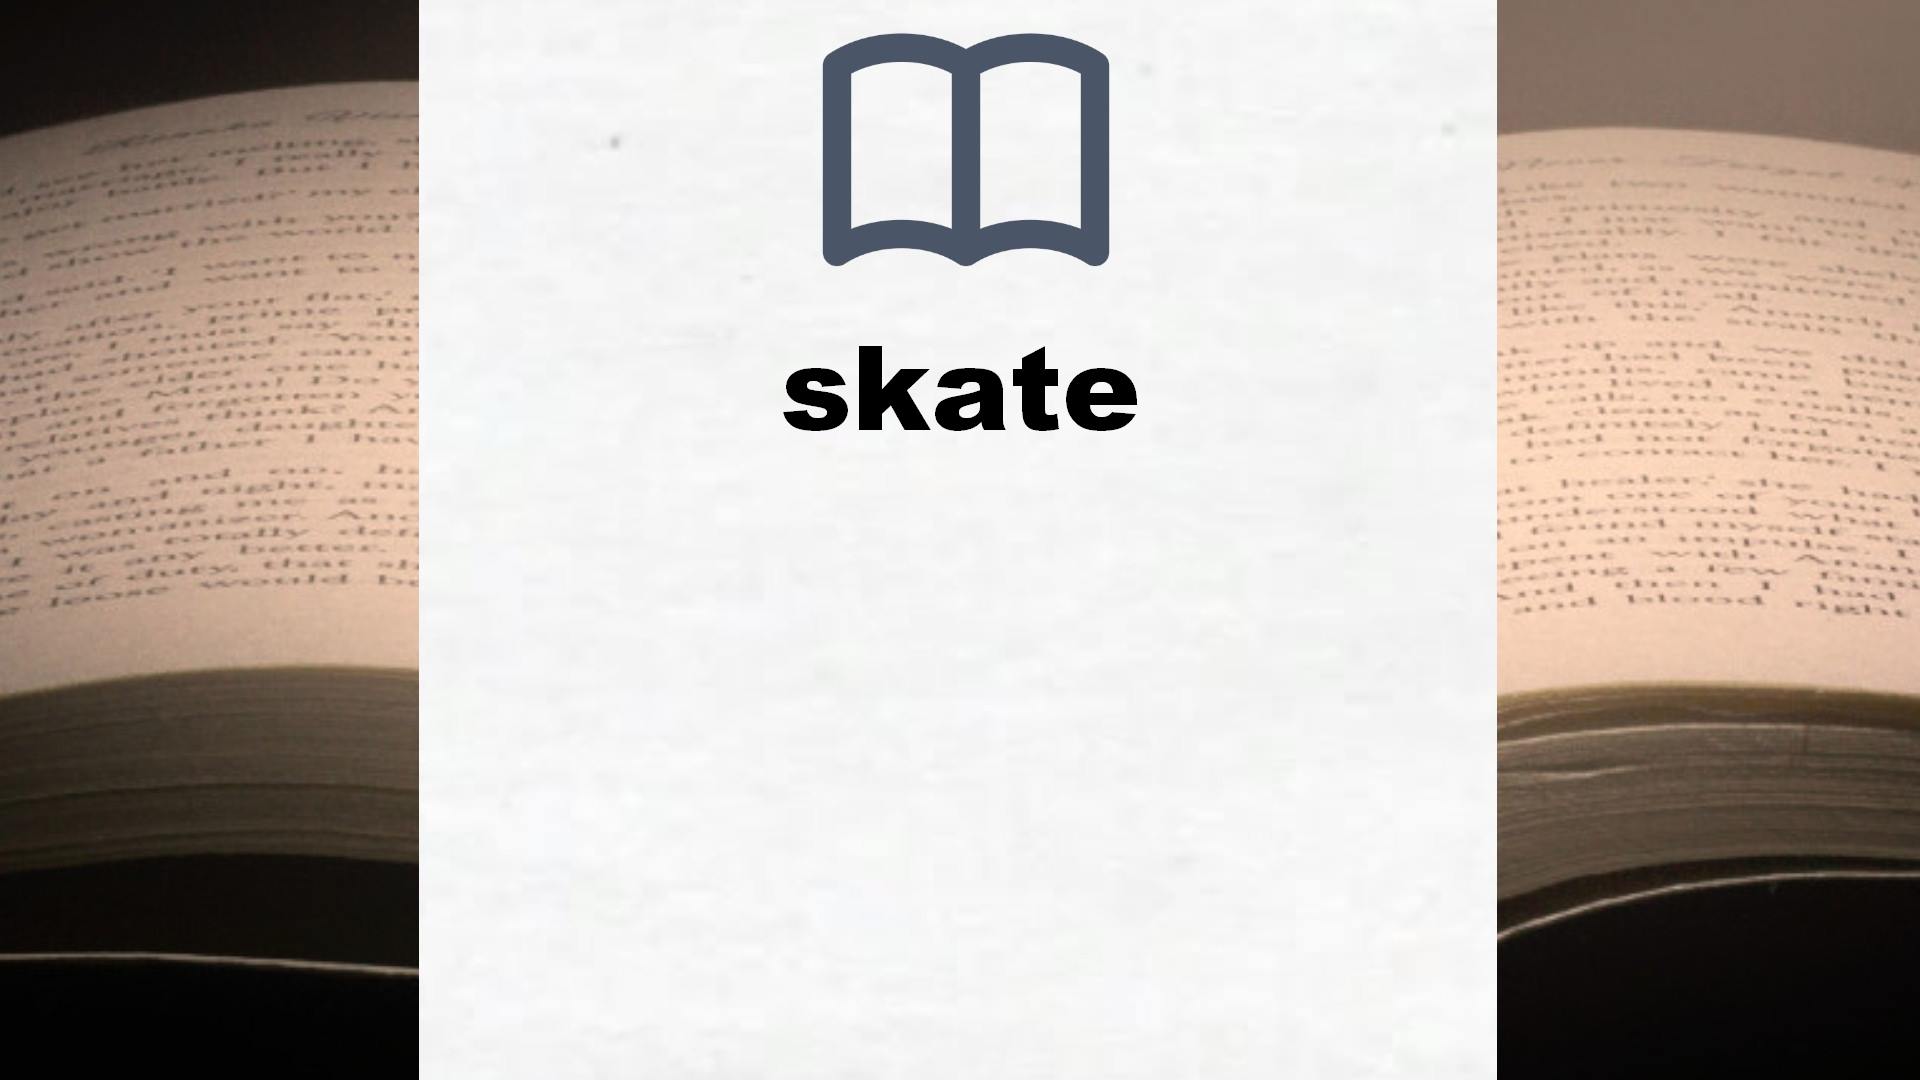 Libros sobre skate